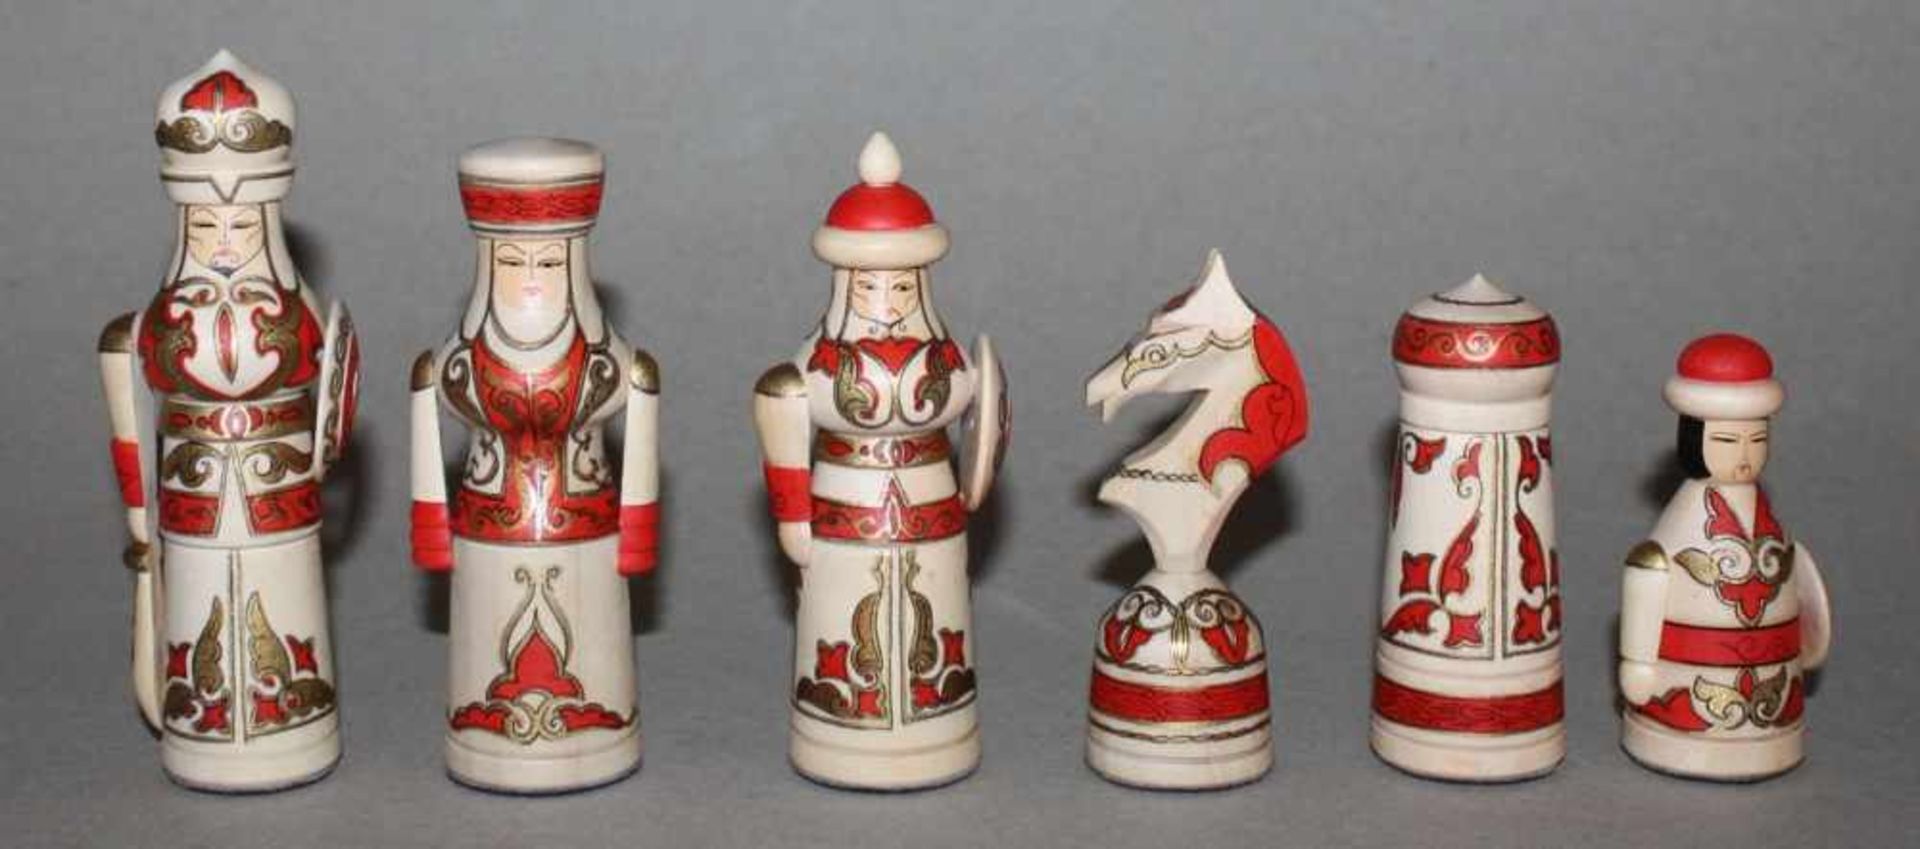 Europa. Russland. Schachfigurenim Stil der russischen Volkskunst aus Holz mit klappbaren, lackierten - Bild 2 aus 3